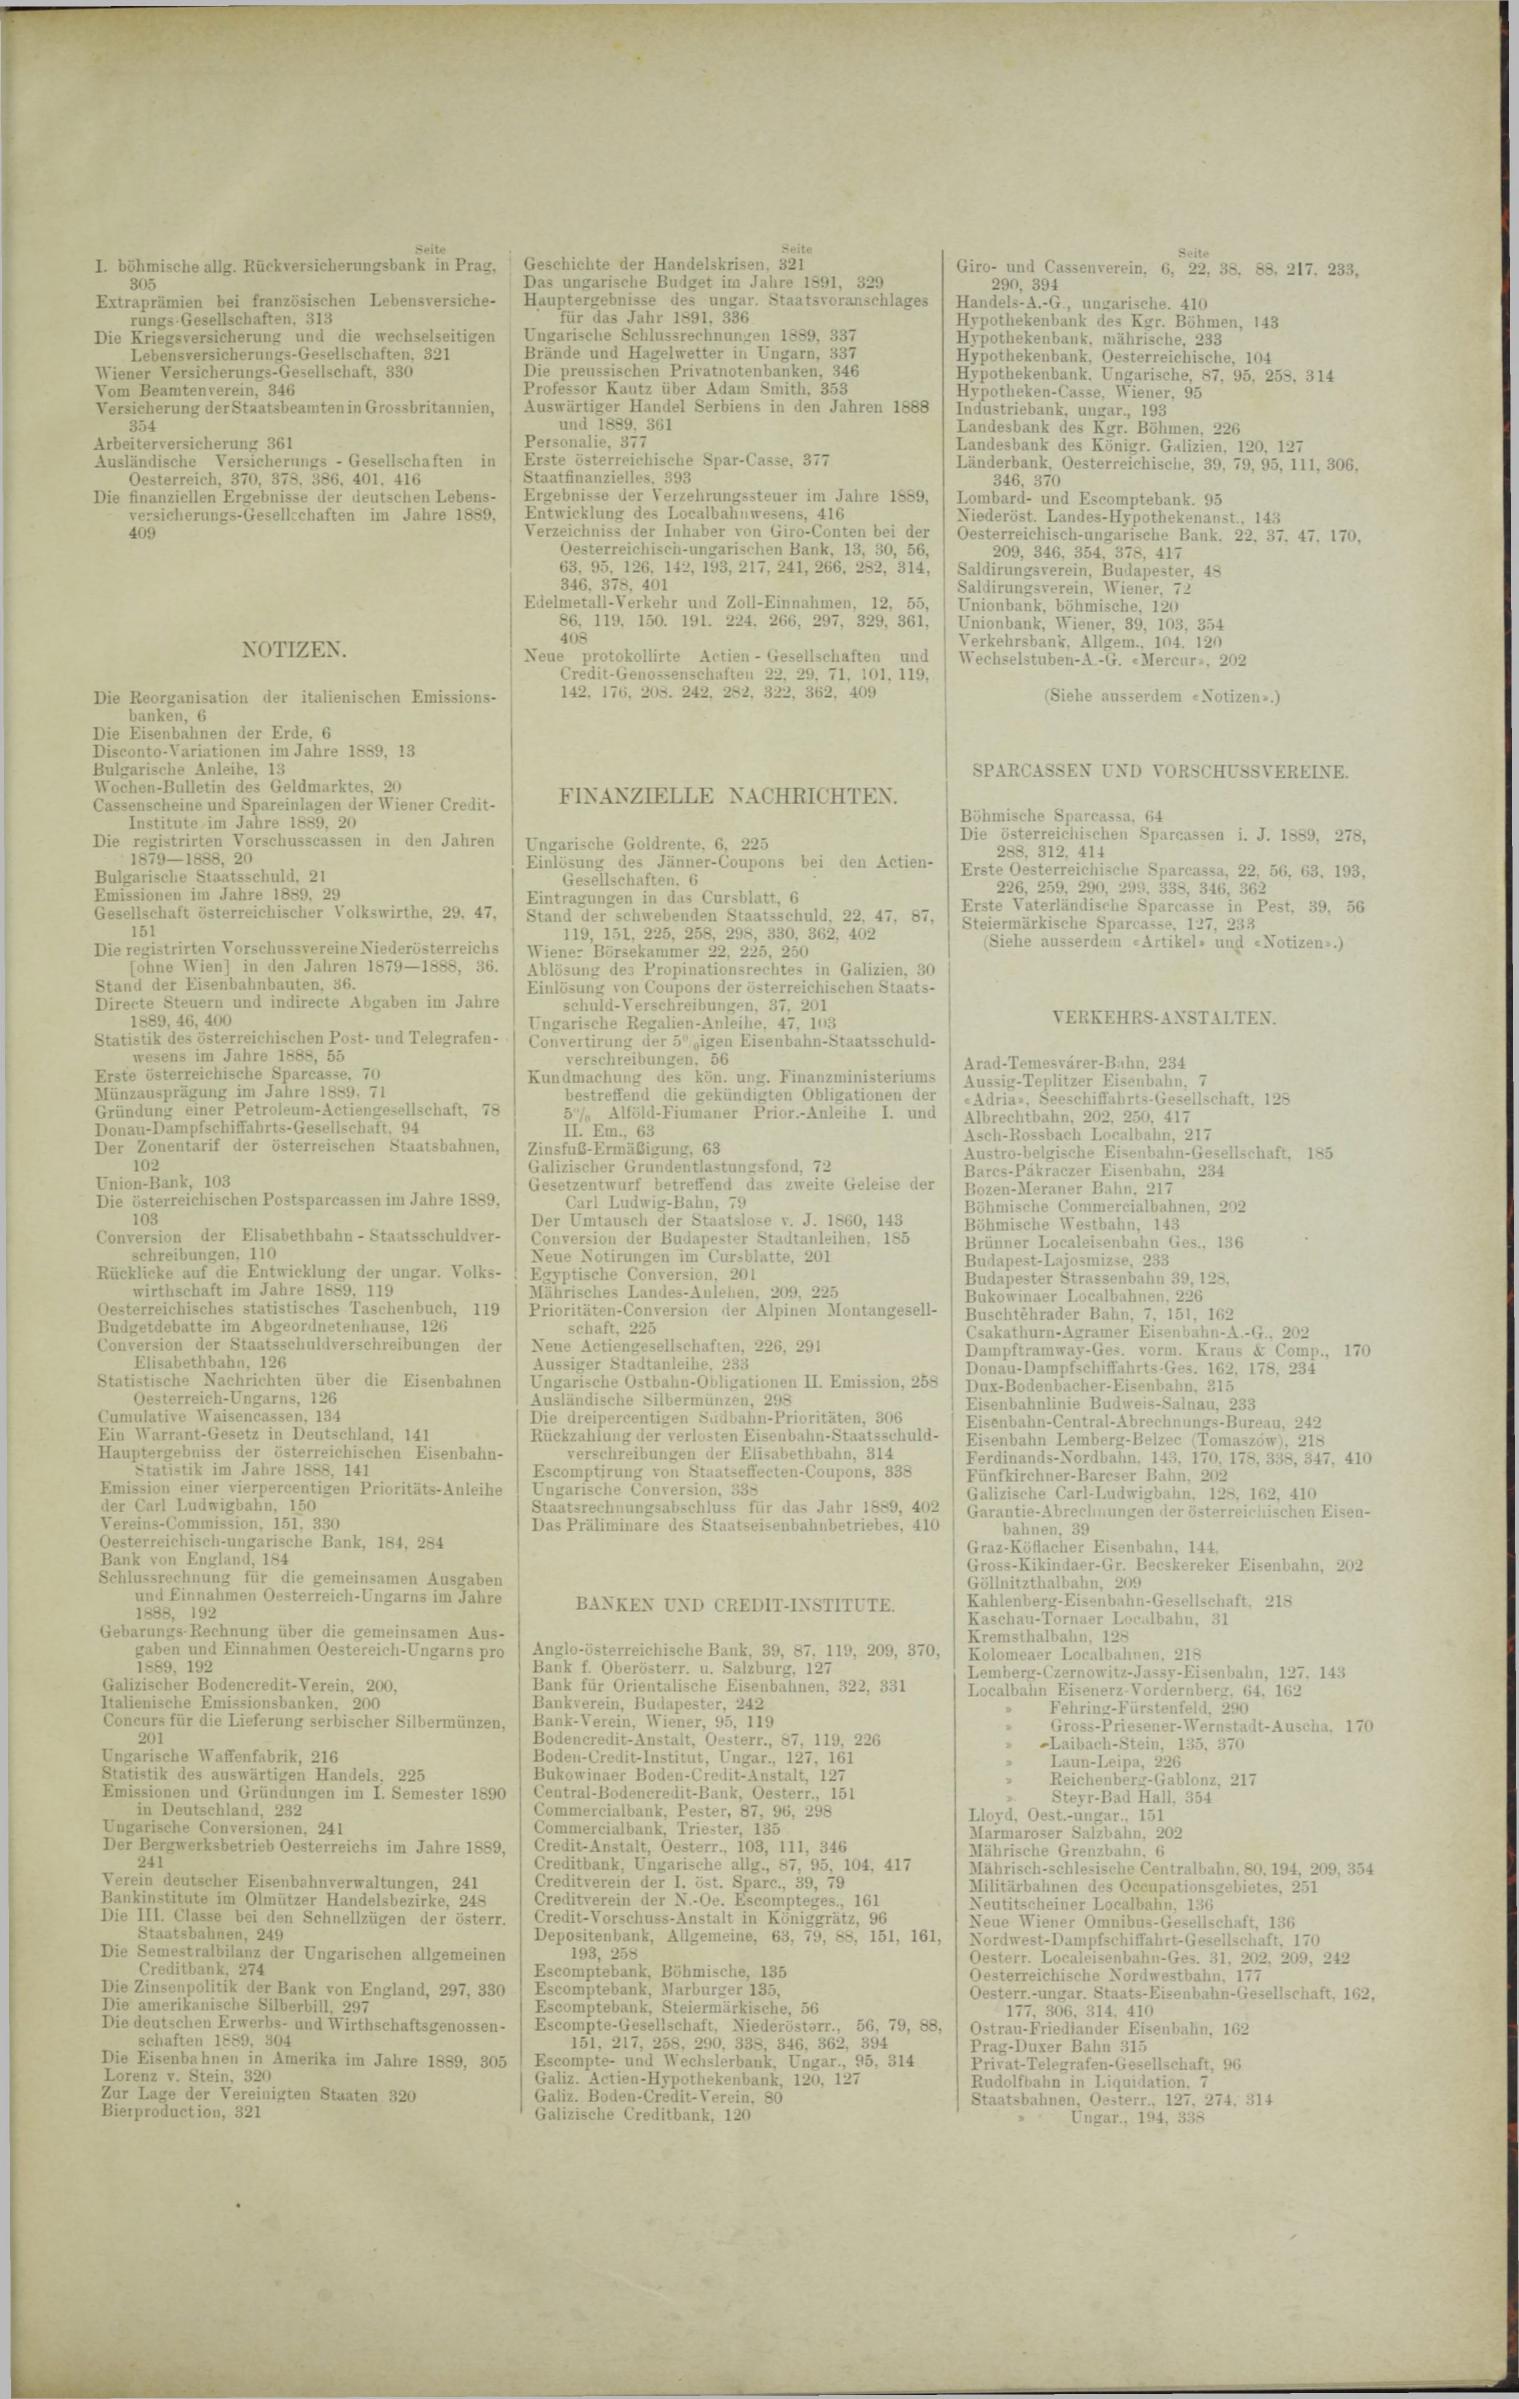 Der Tresor 24.04.1890 - Seite 11